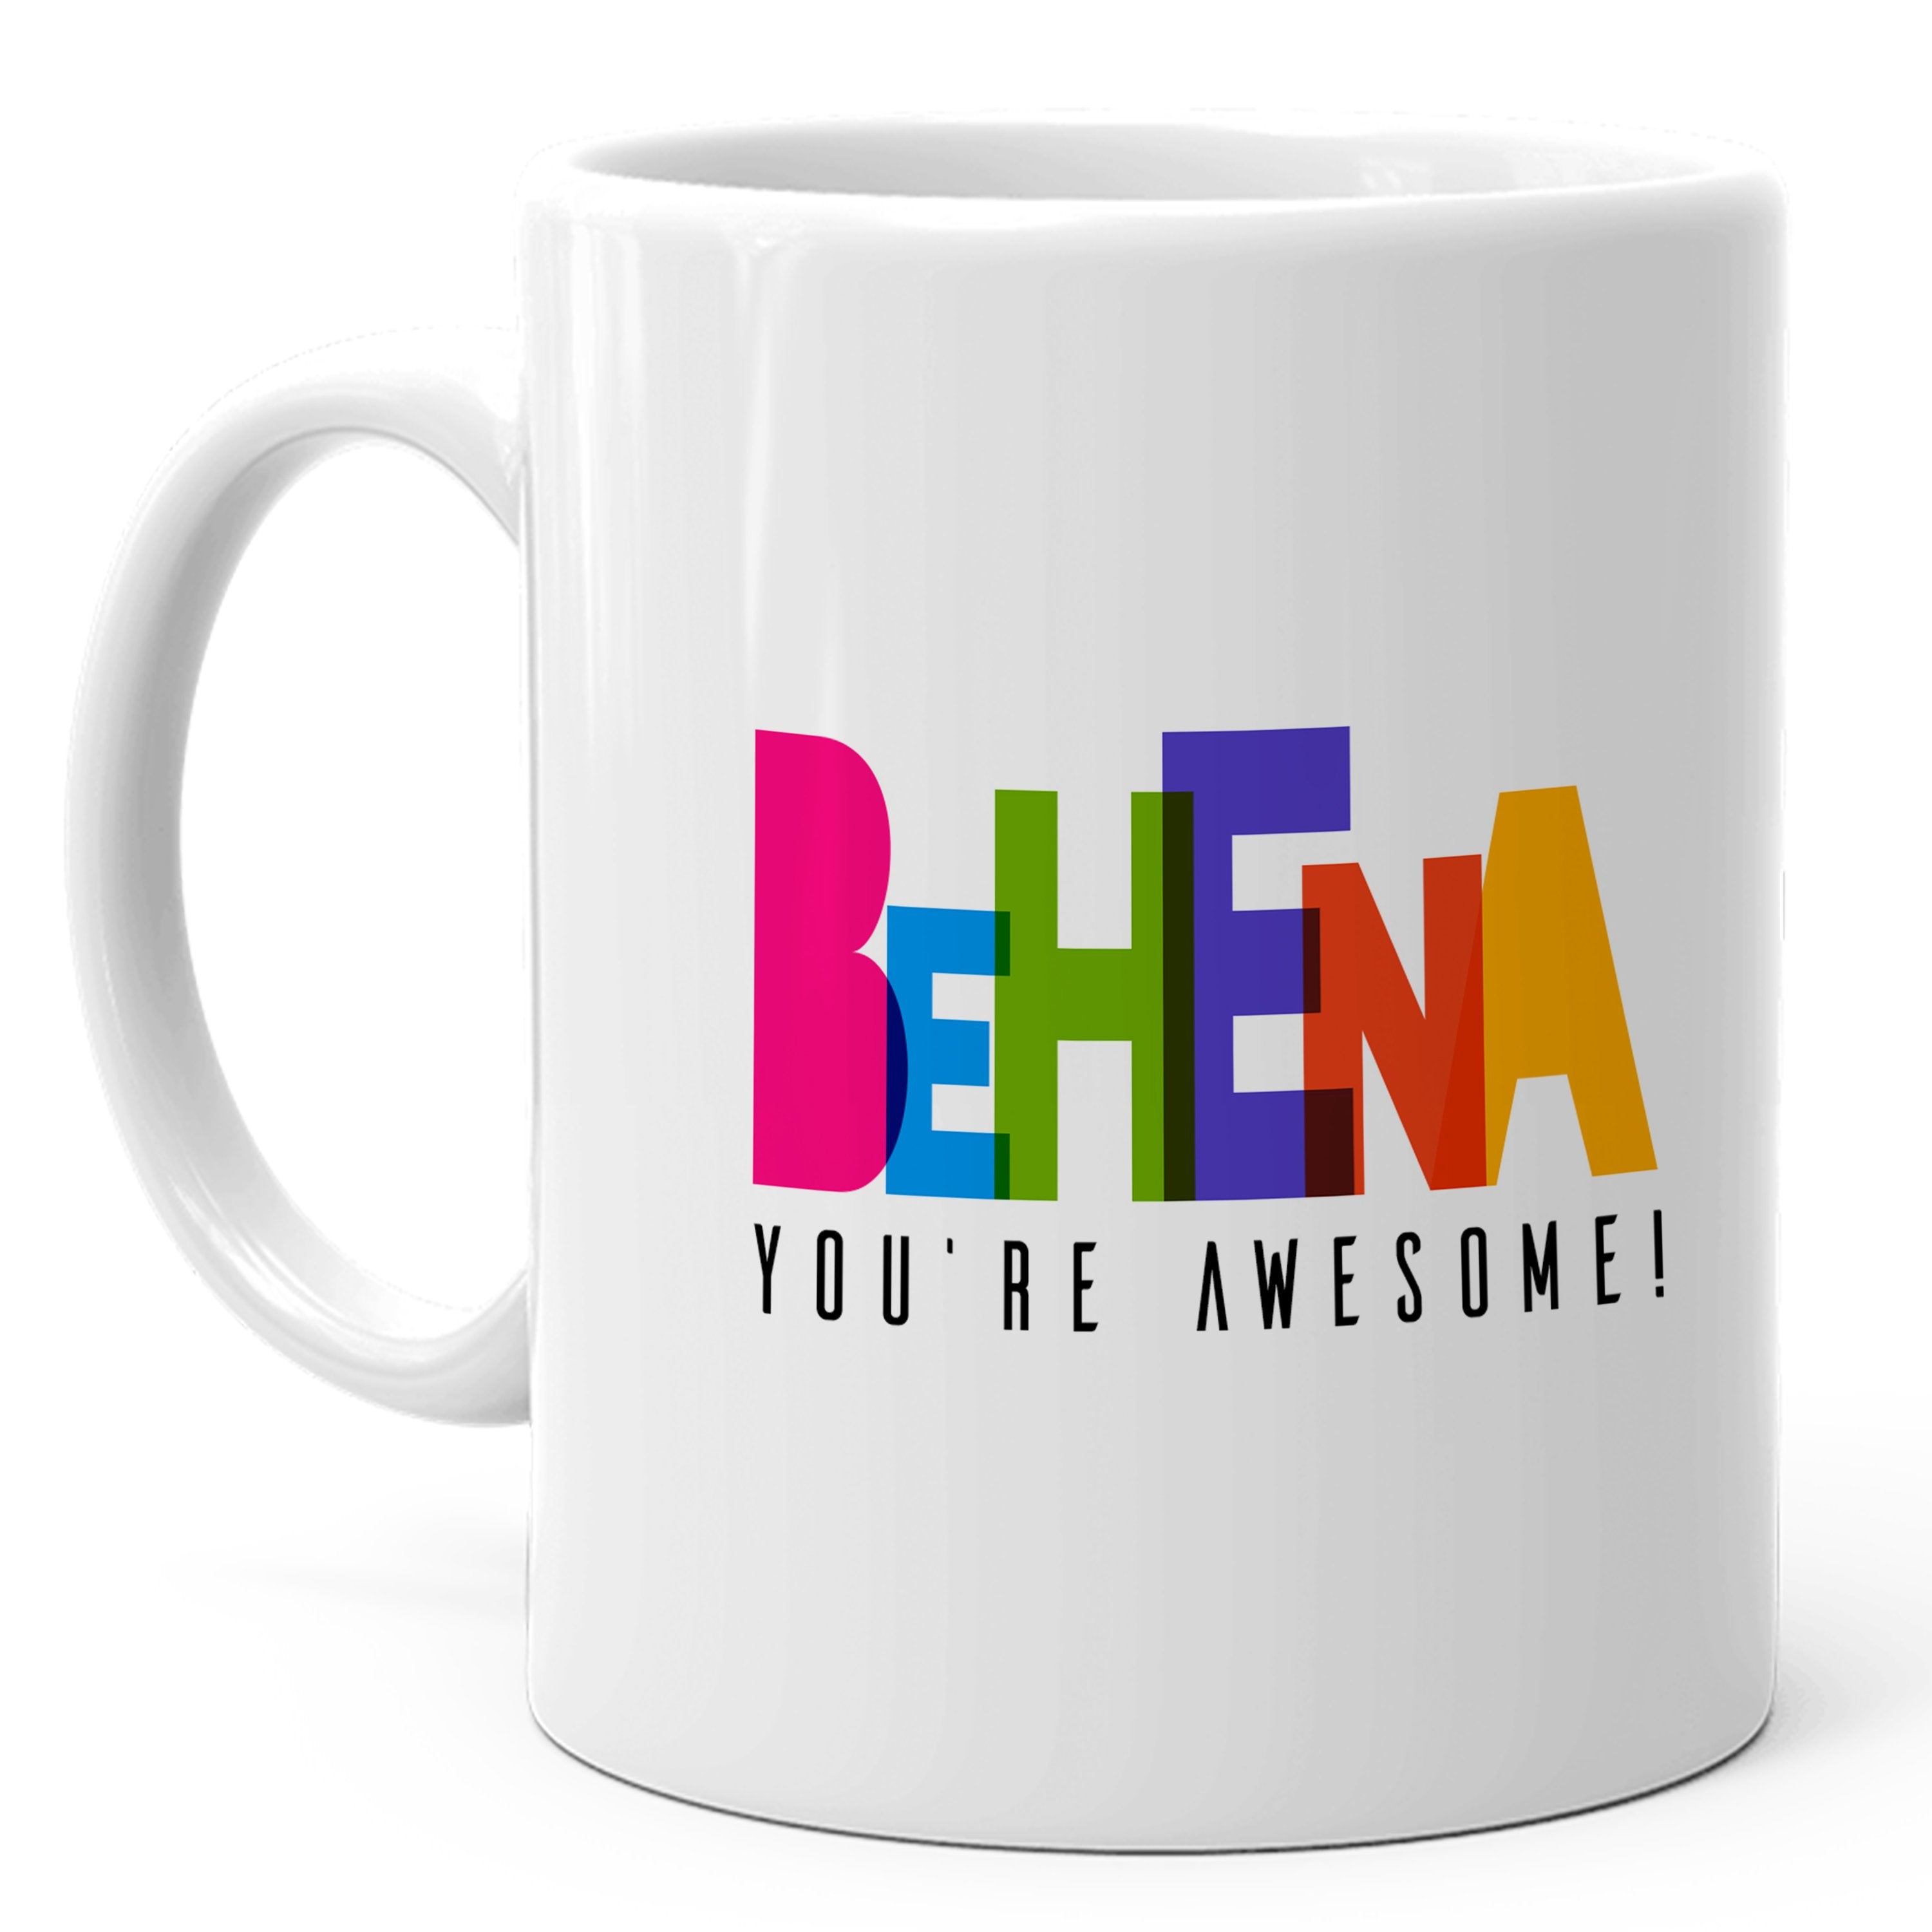 behena-youre-awesome-mug